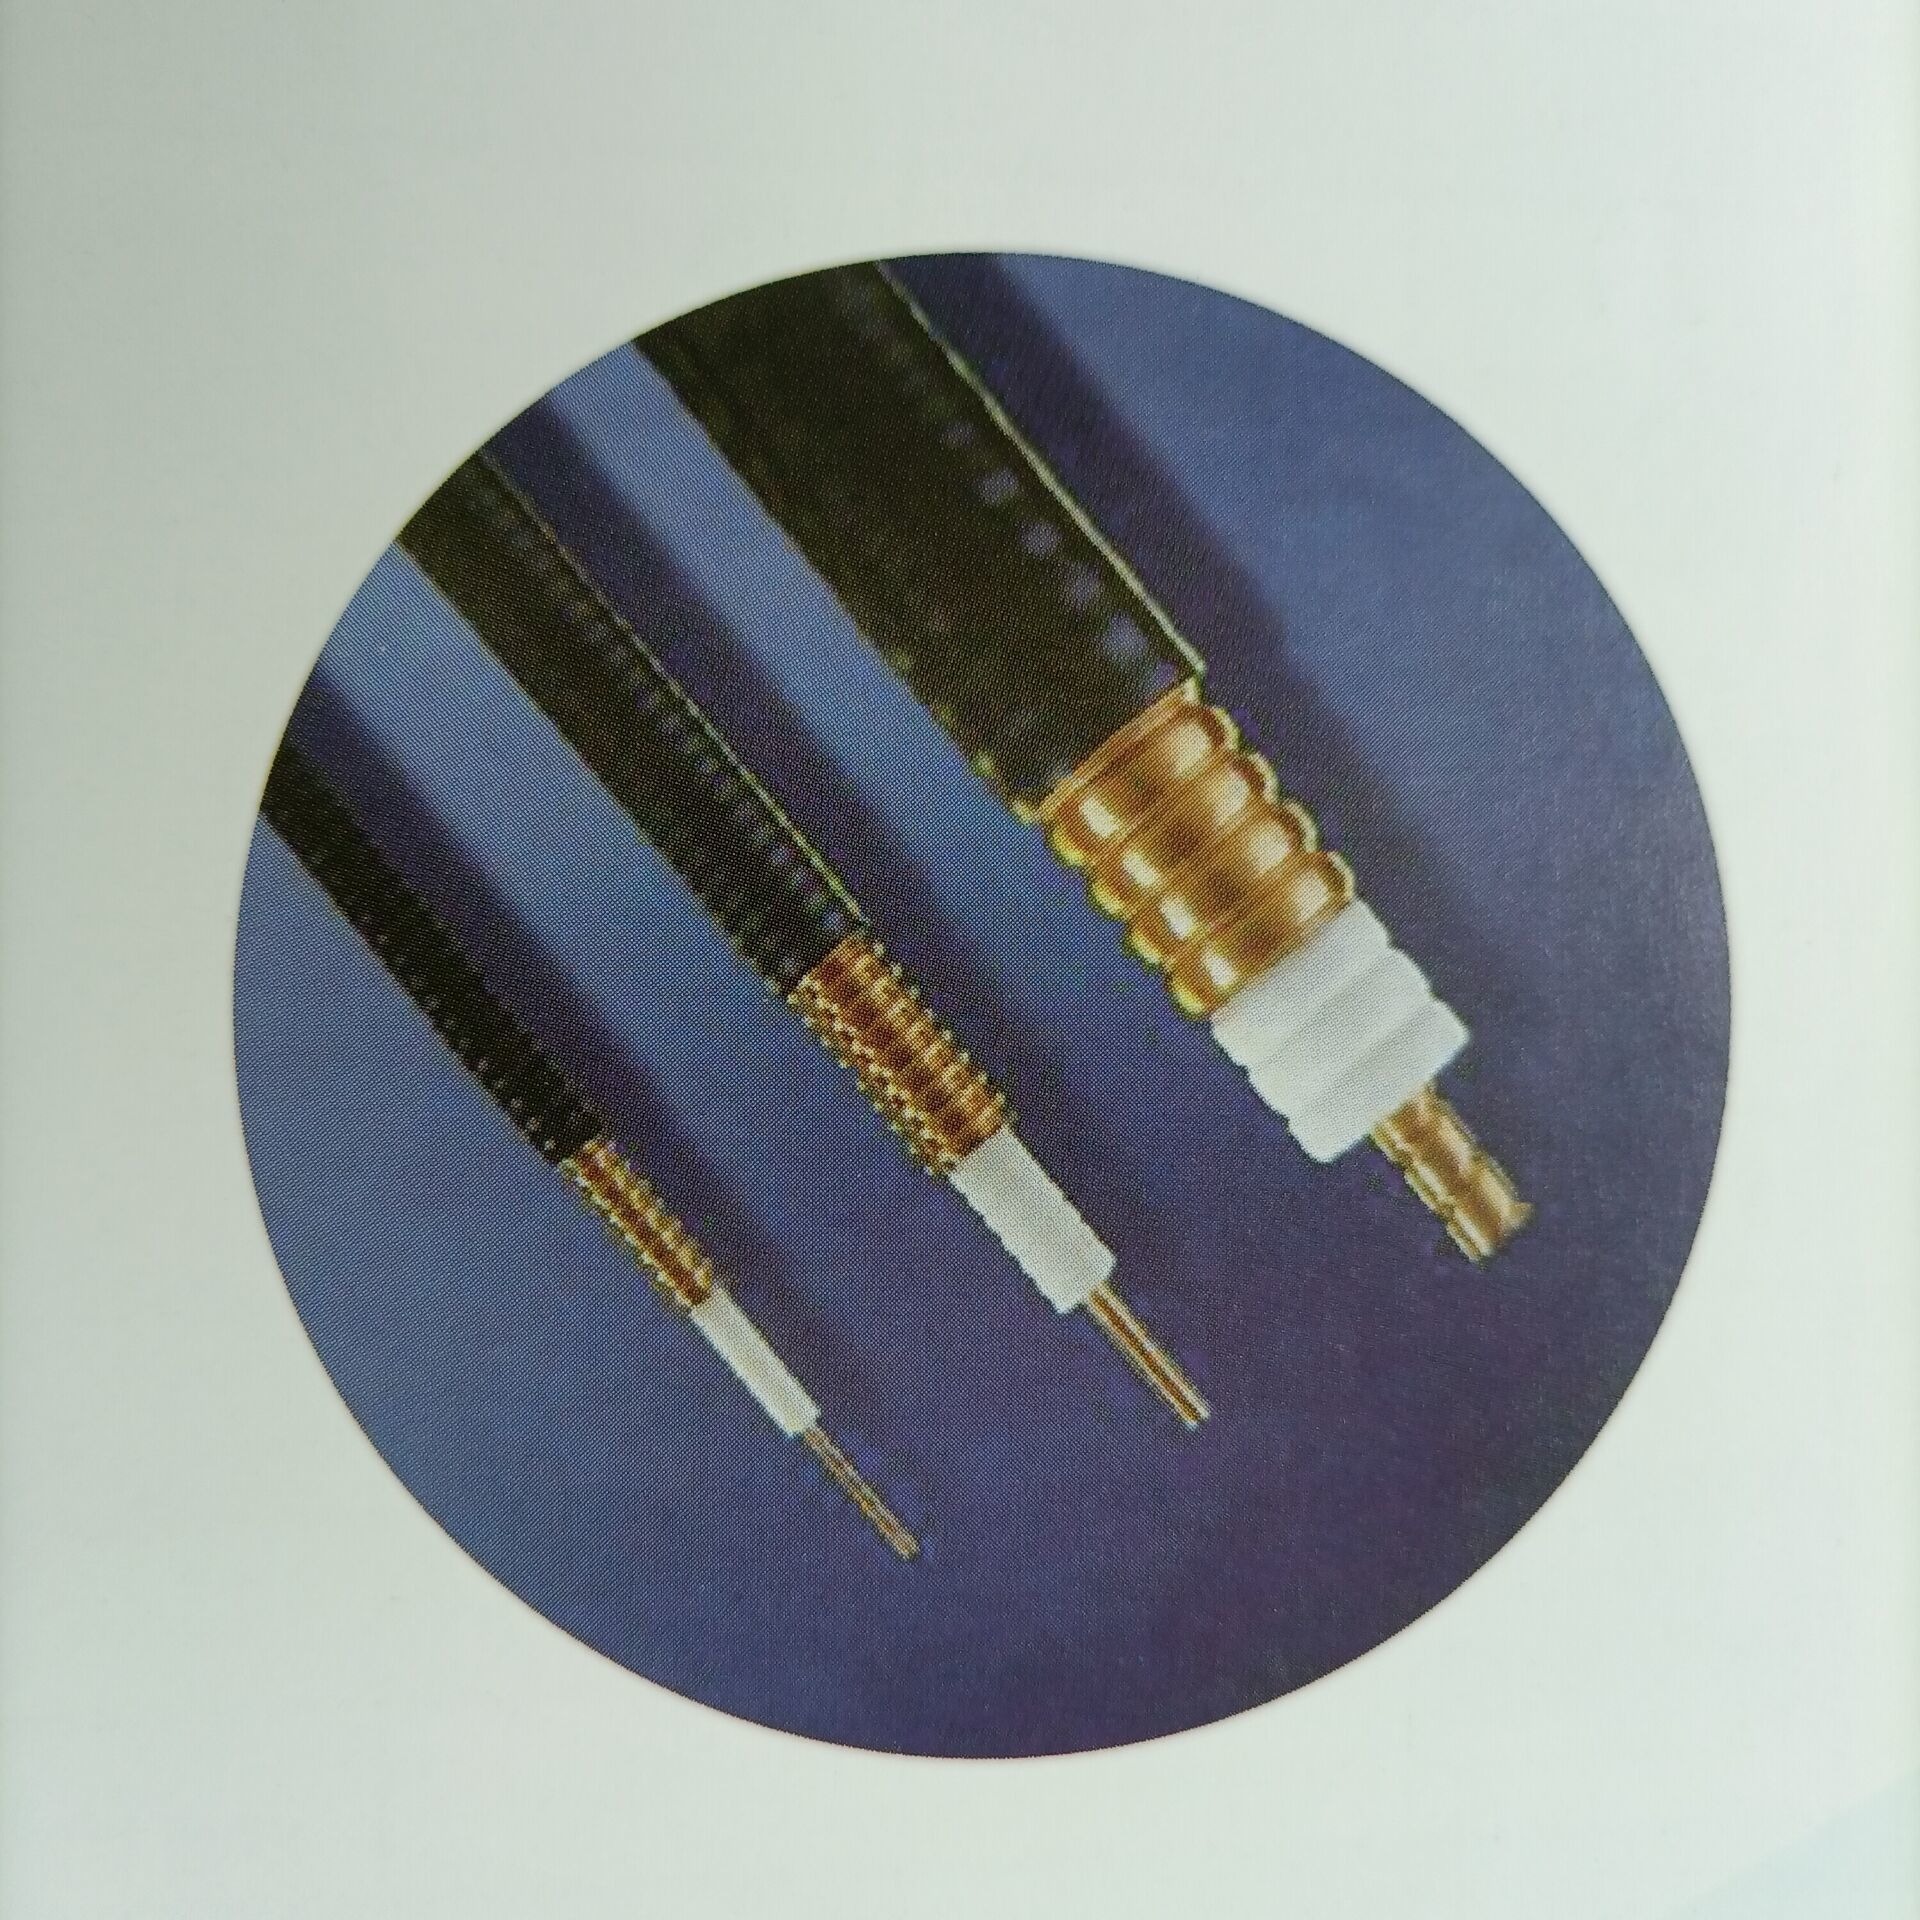 无线电通讯传输馈管 电力负控电缆 天线 通信馈线 通信电缆  传输电缆  HCAAYZ-50-12 (1/2) 通信馈管